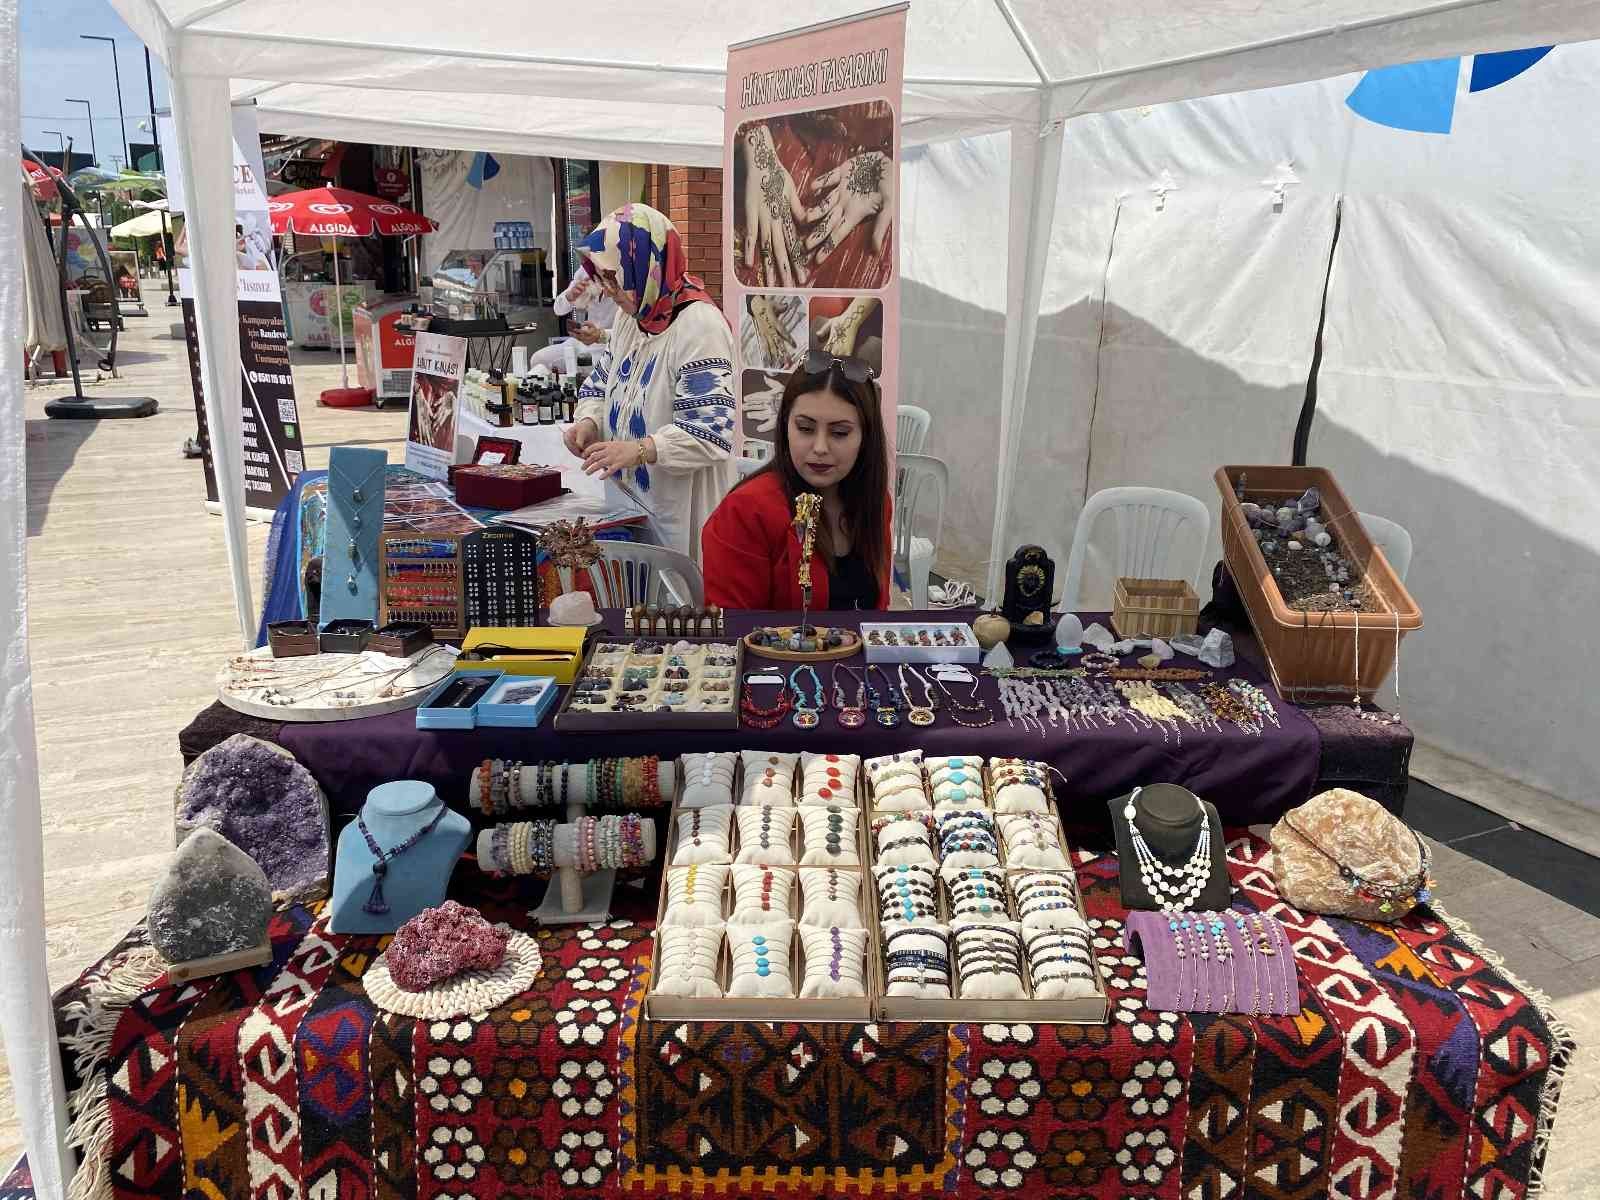 Tuzla Belediyesi’nin destekleriyle Tuzlalı 150 kadın girişimci ‘Alışveriş Festivali’ düzenledi. 70 standın açıldığı ve el emeği göz nuru ...